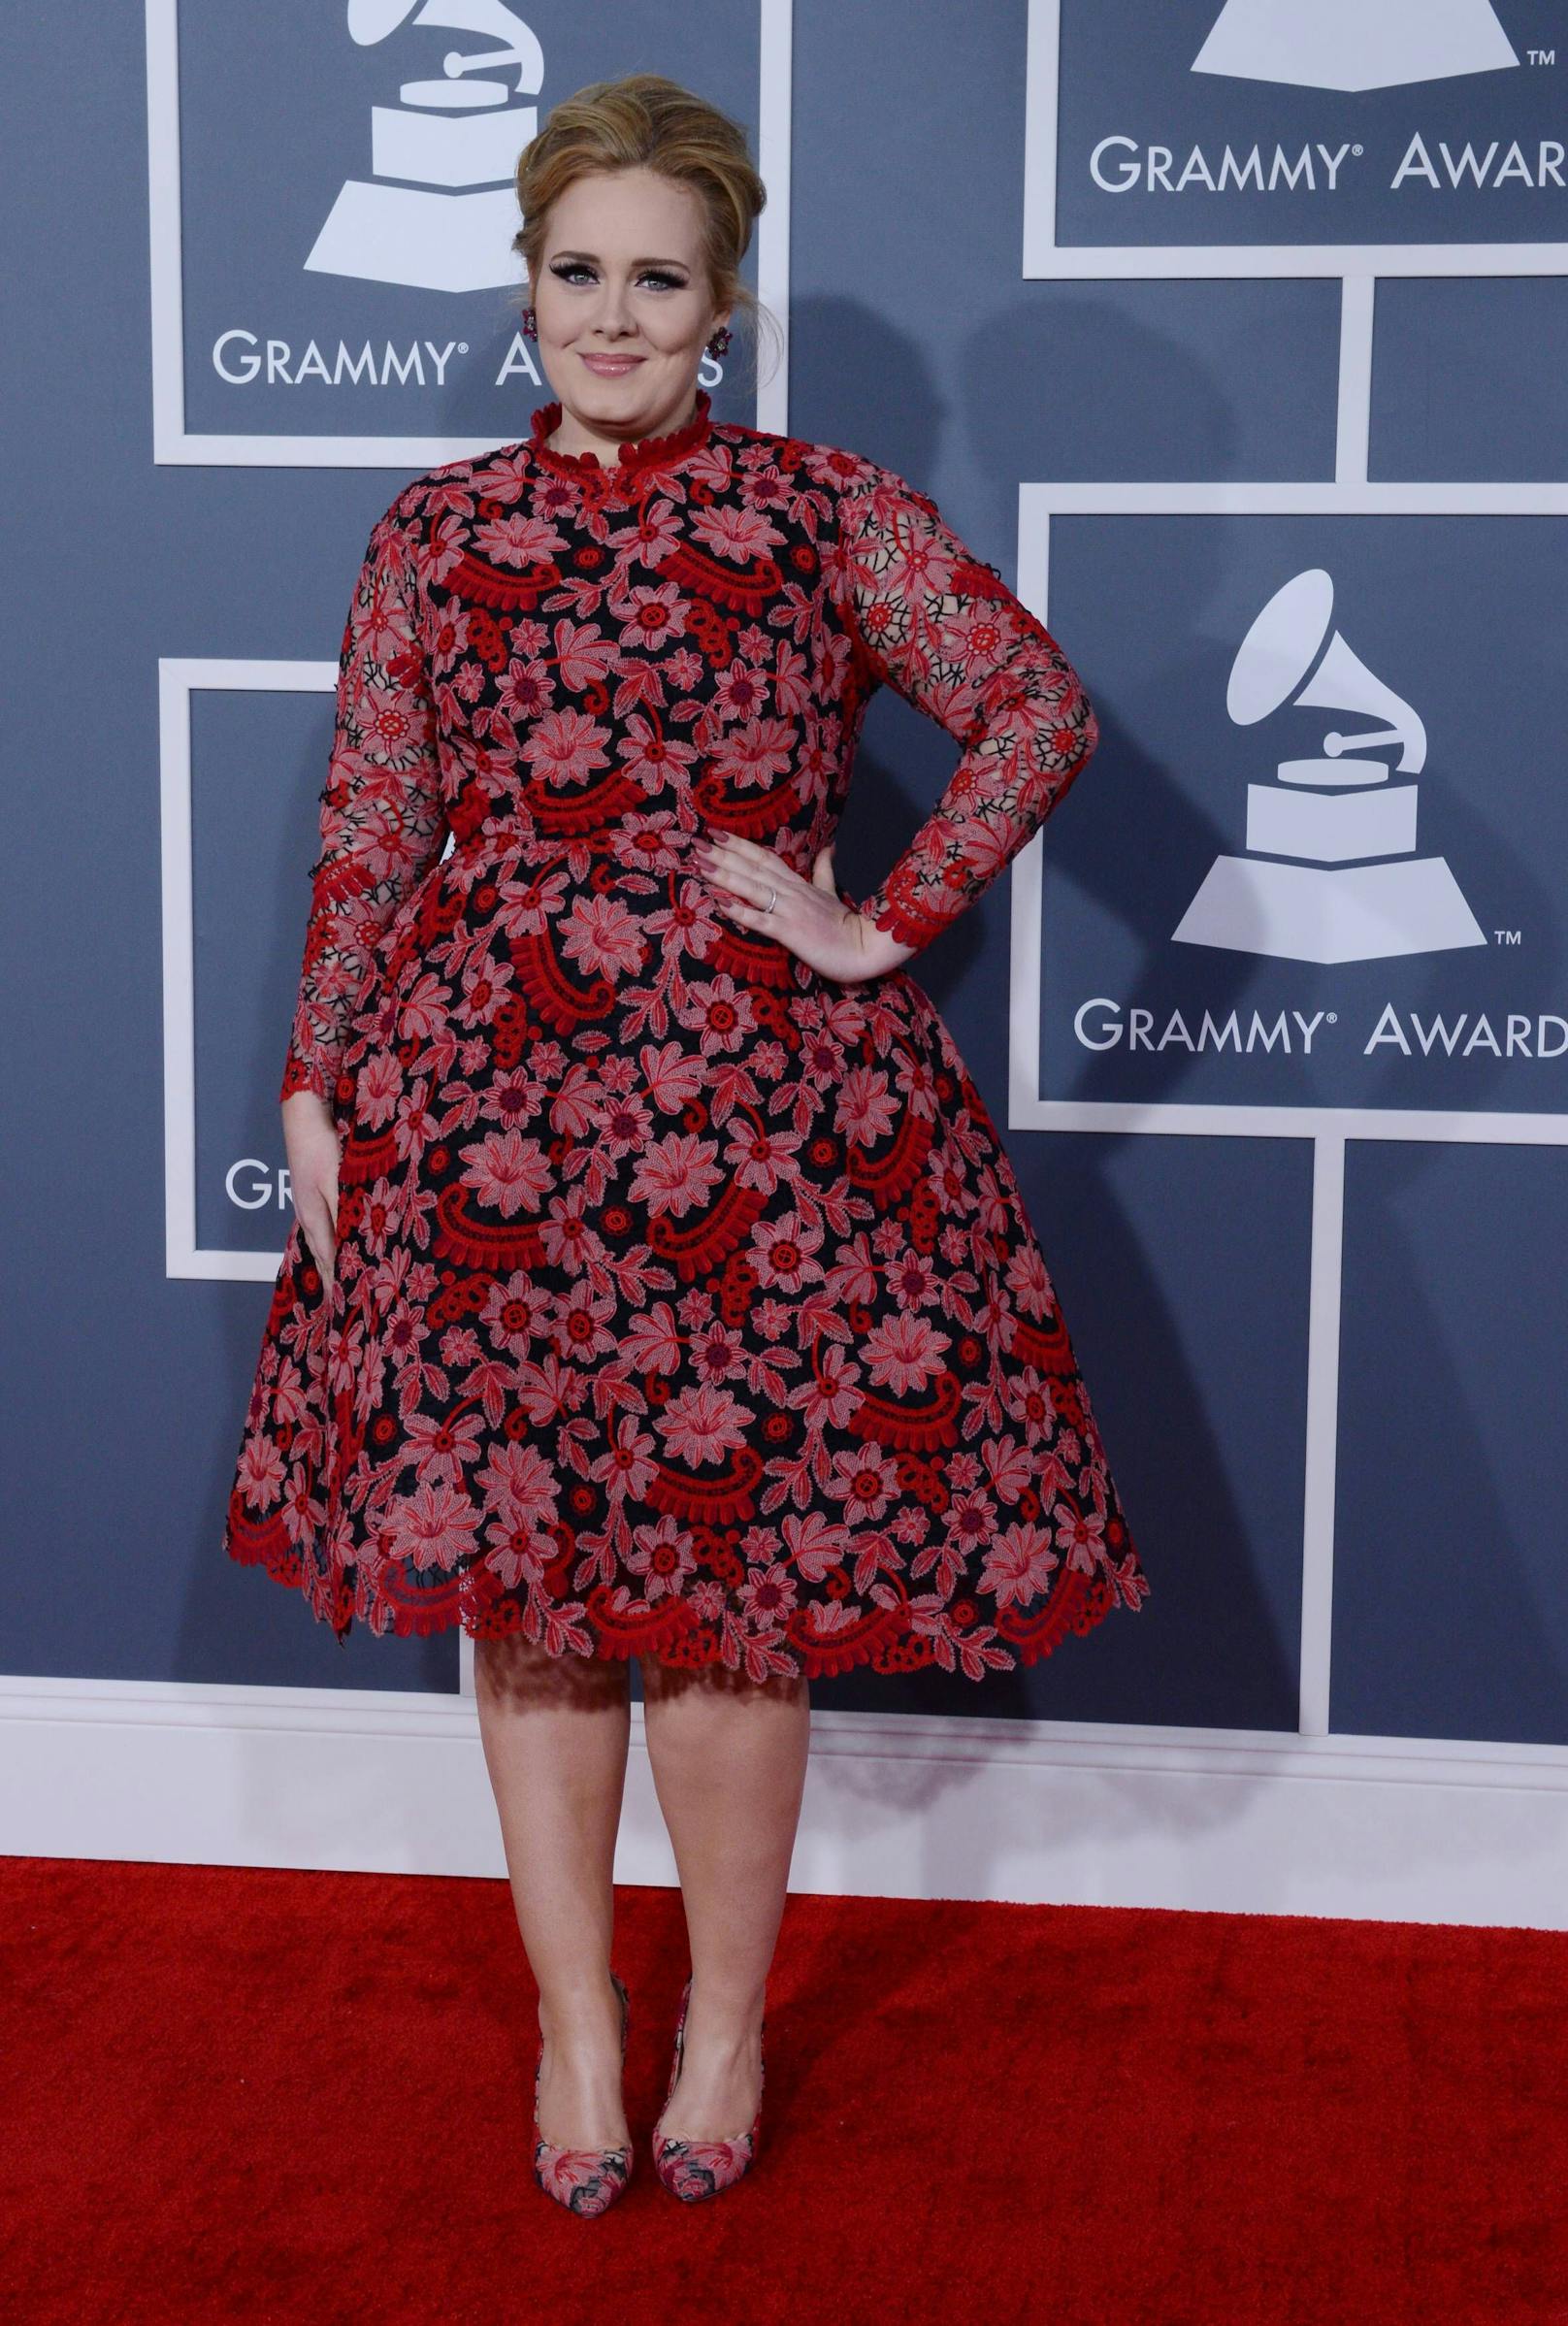 2013 sah es dann schon anders aus: Da war sie bei den Grammy's am Red Carpet.